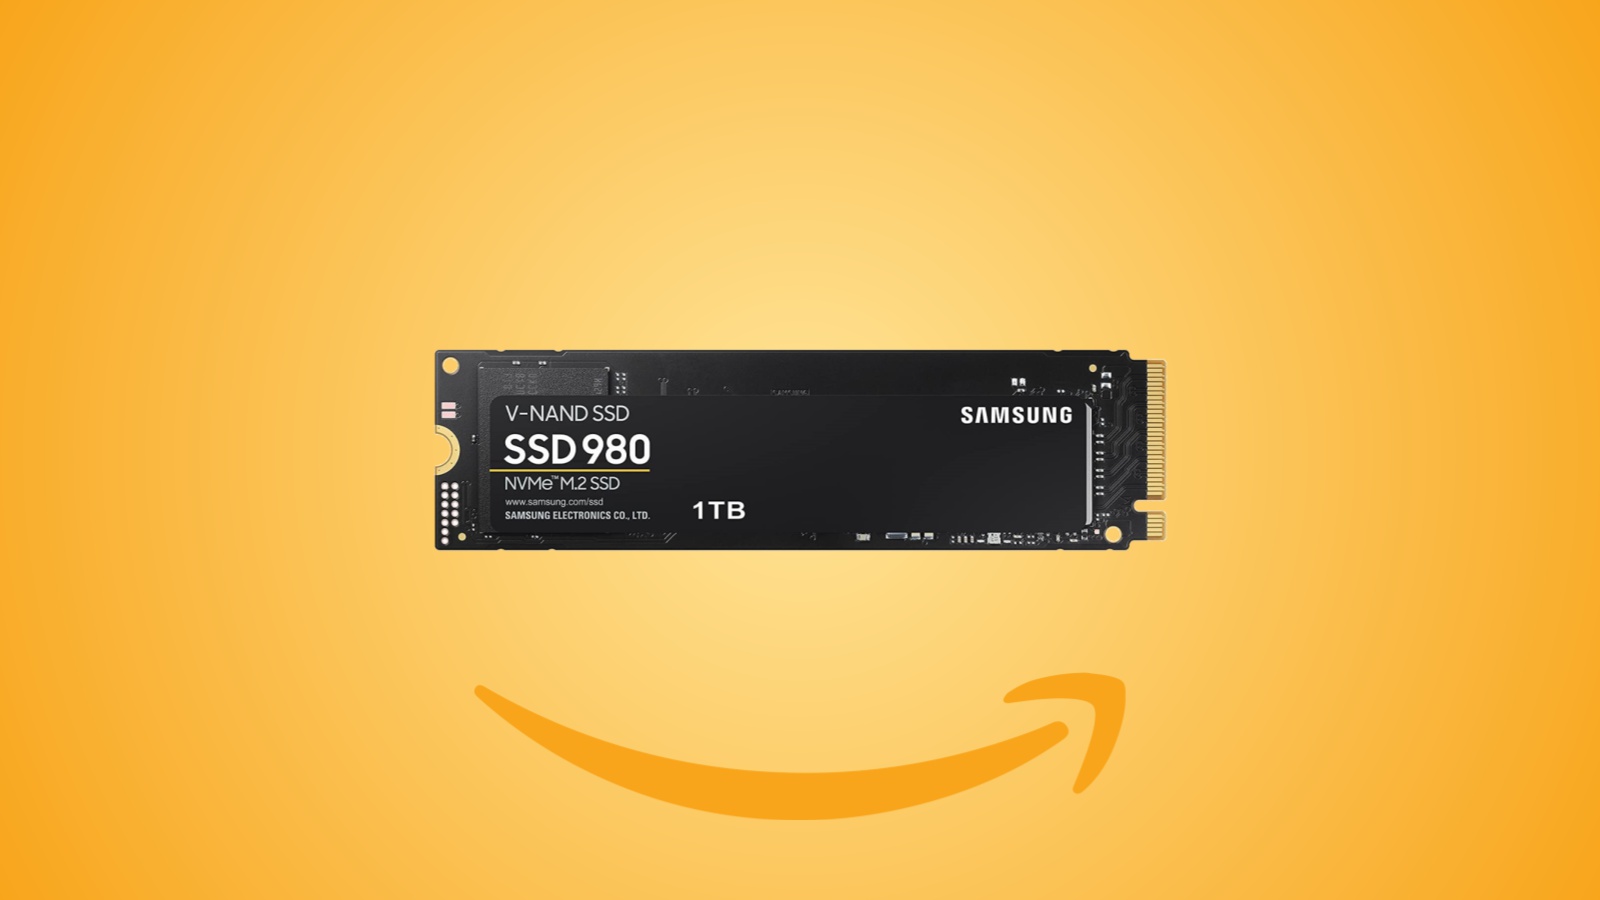 Offerte Amazon: l'SSD Samsung 980 da 1 TB per PC è ora in forte sconto al prezzo minimo storico